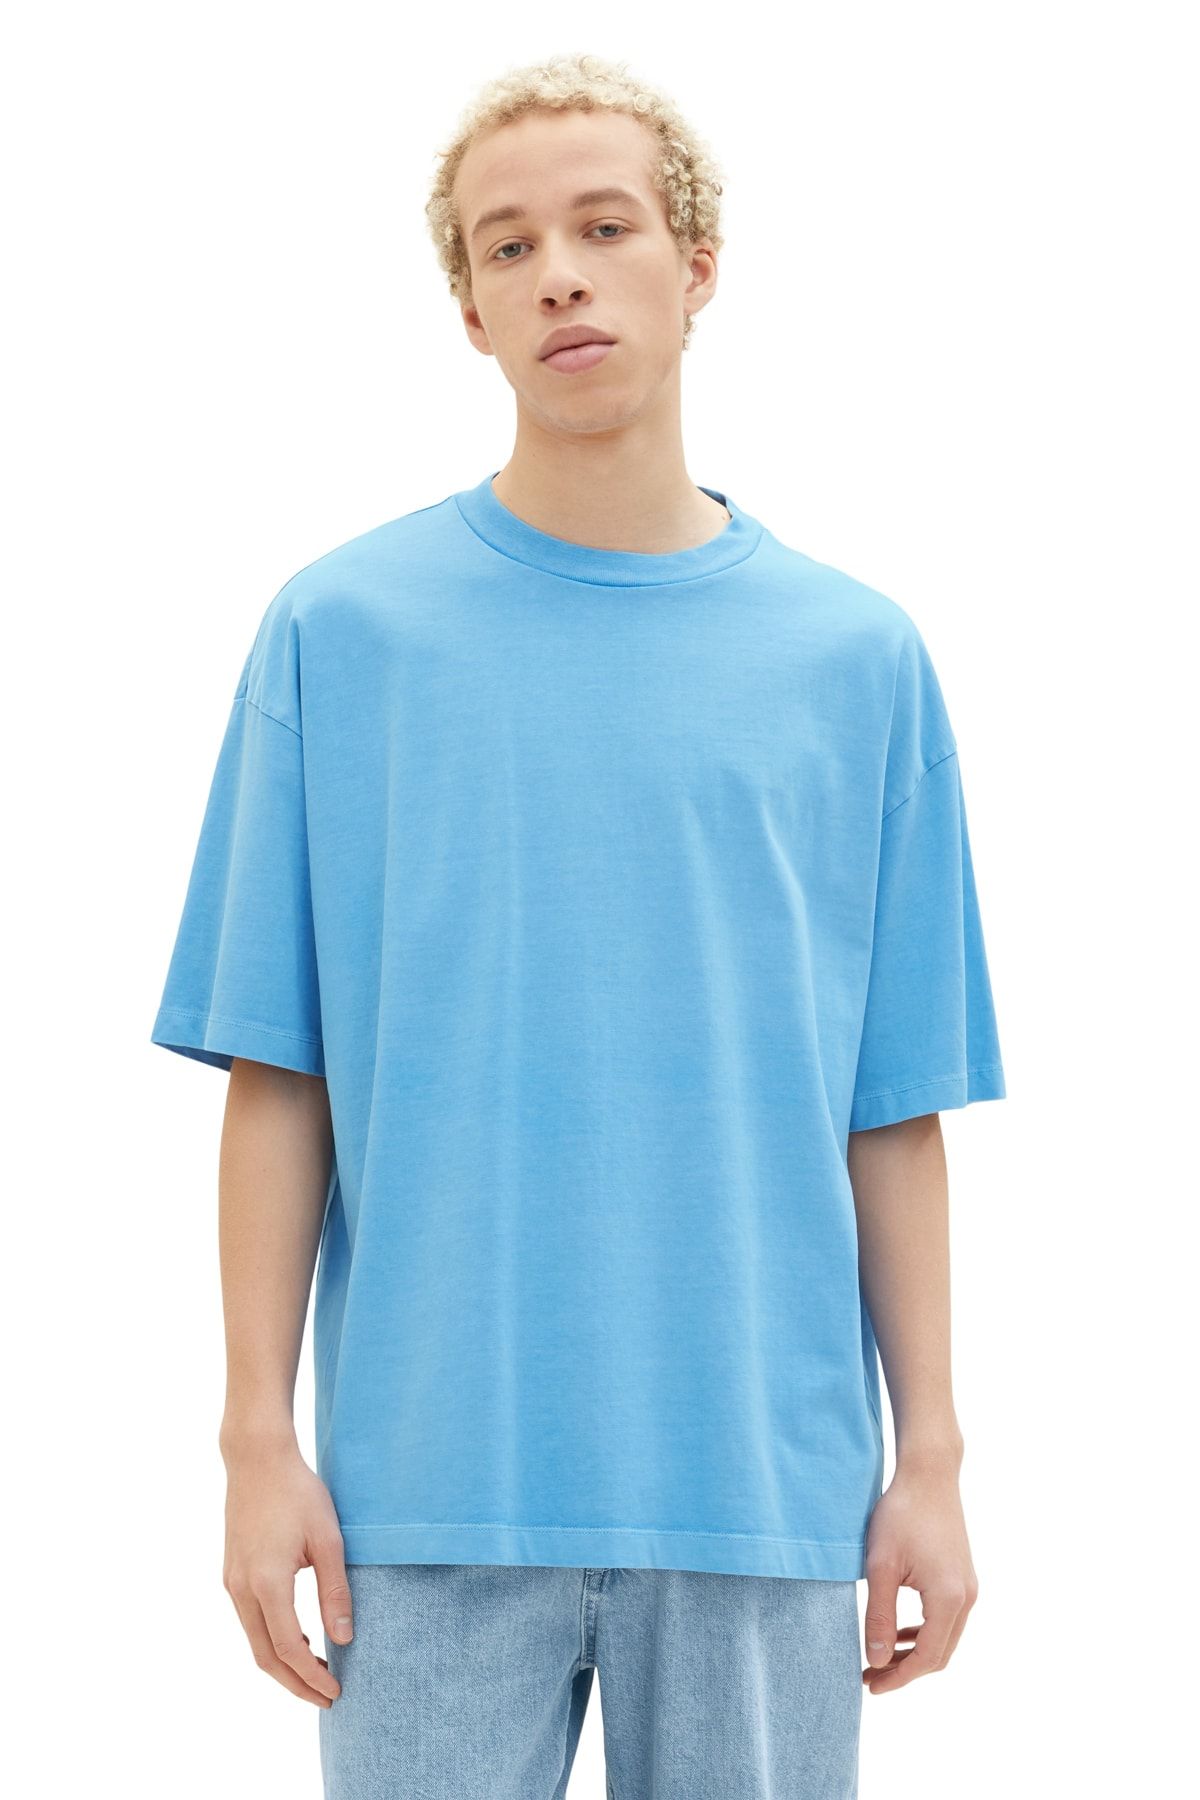 Tom Tailor Denim Men\'s sky - rainy blue Trendyol T-Shirt